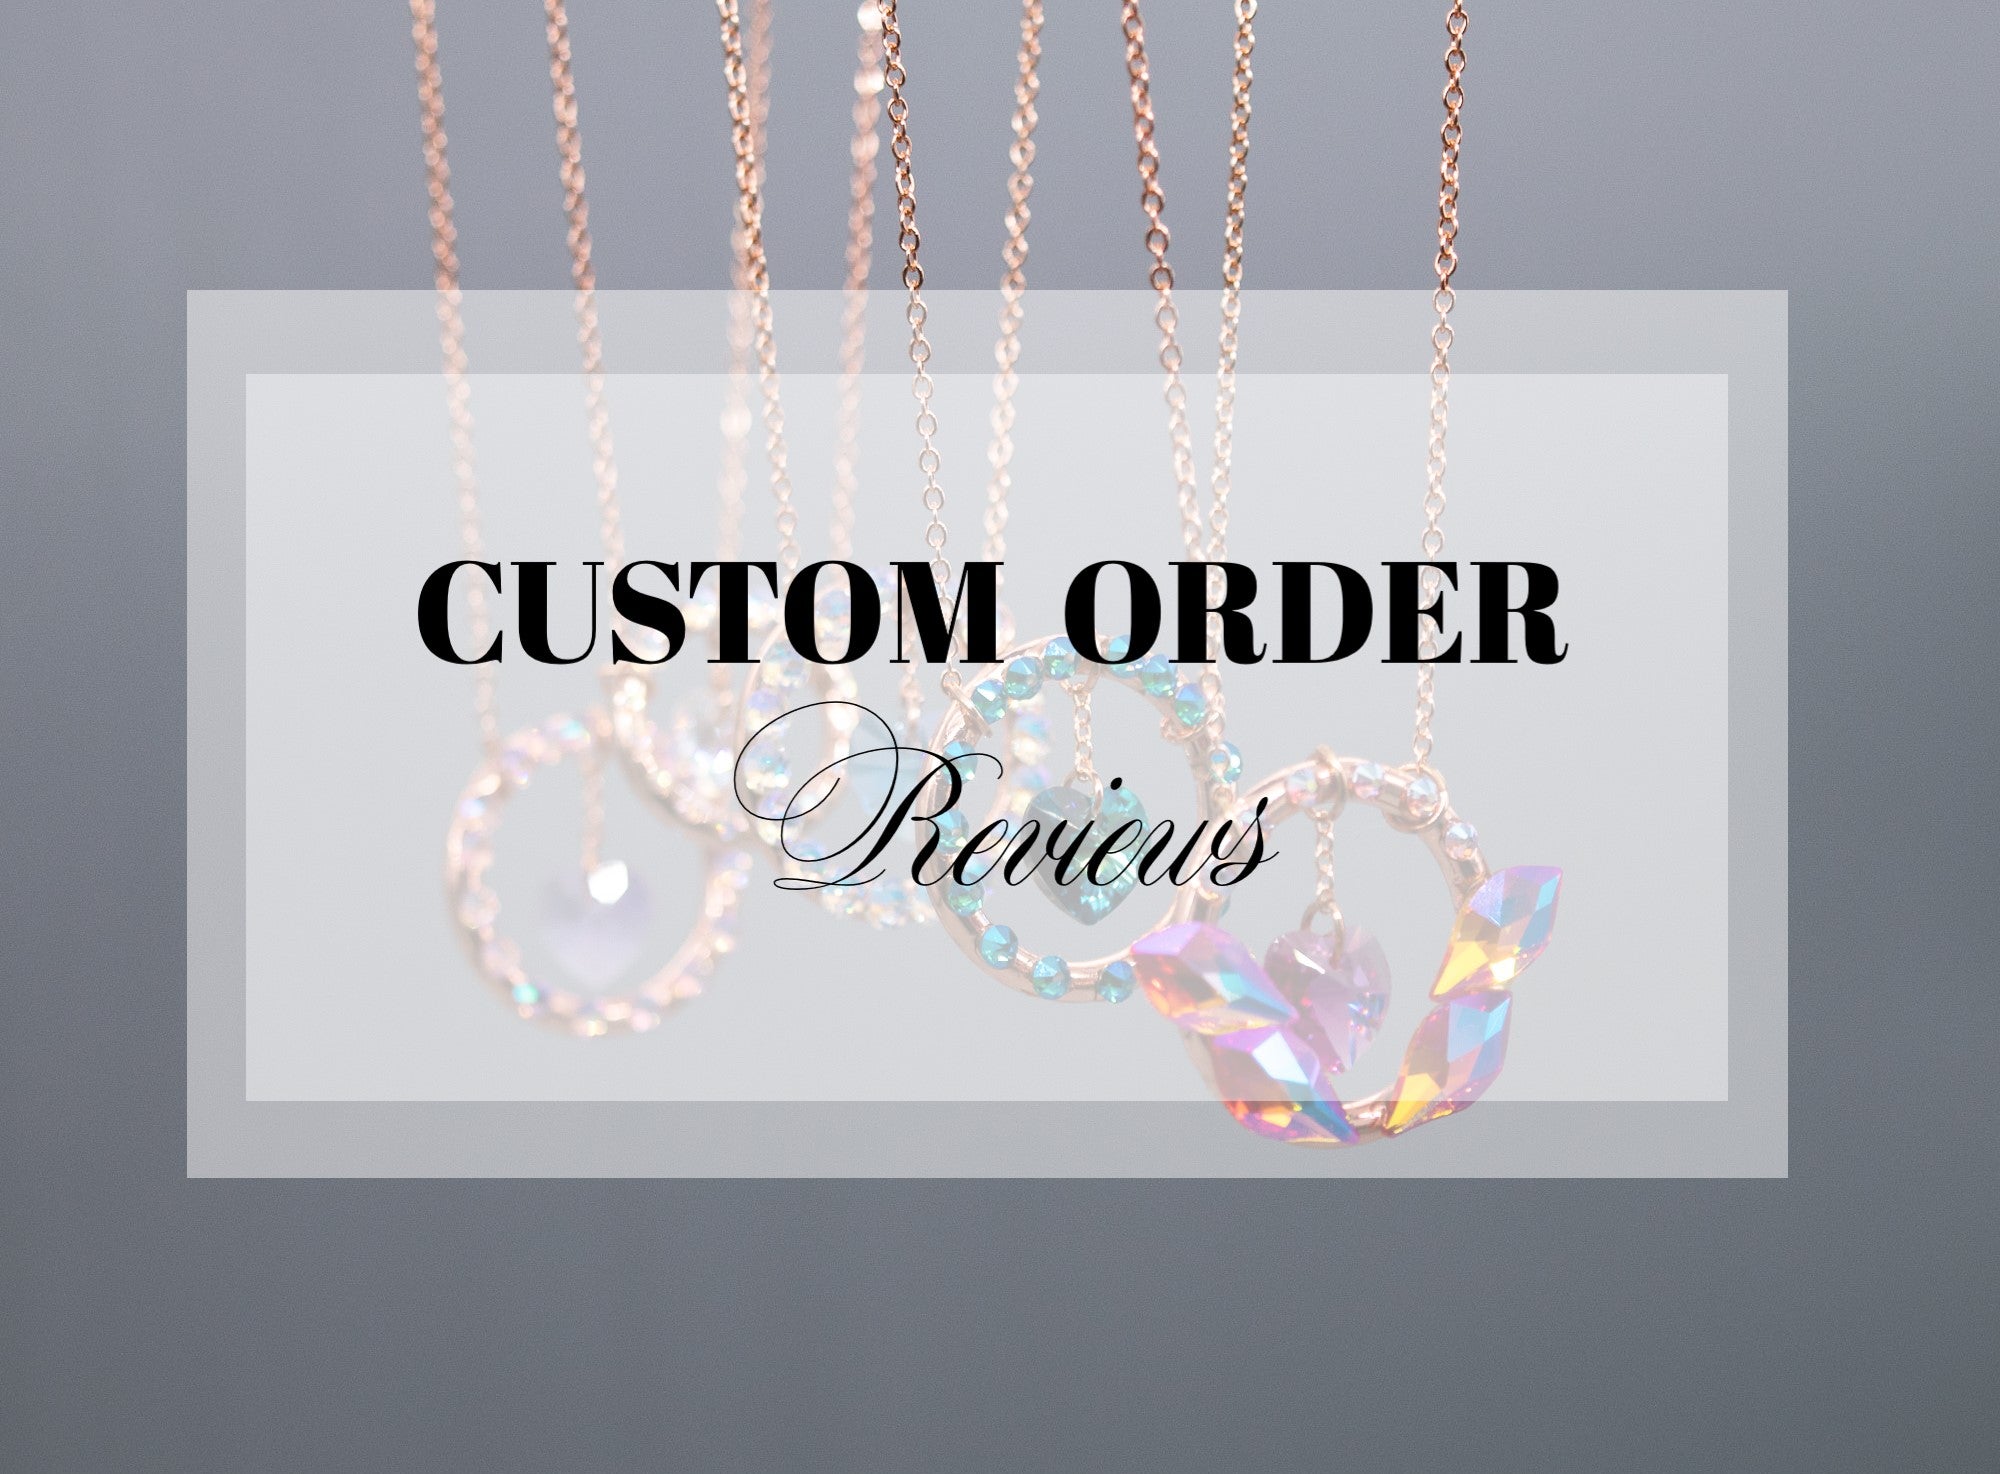 Custom Order ~ Reviews